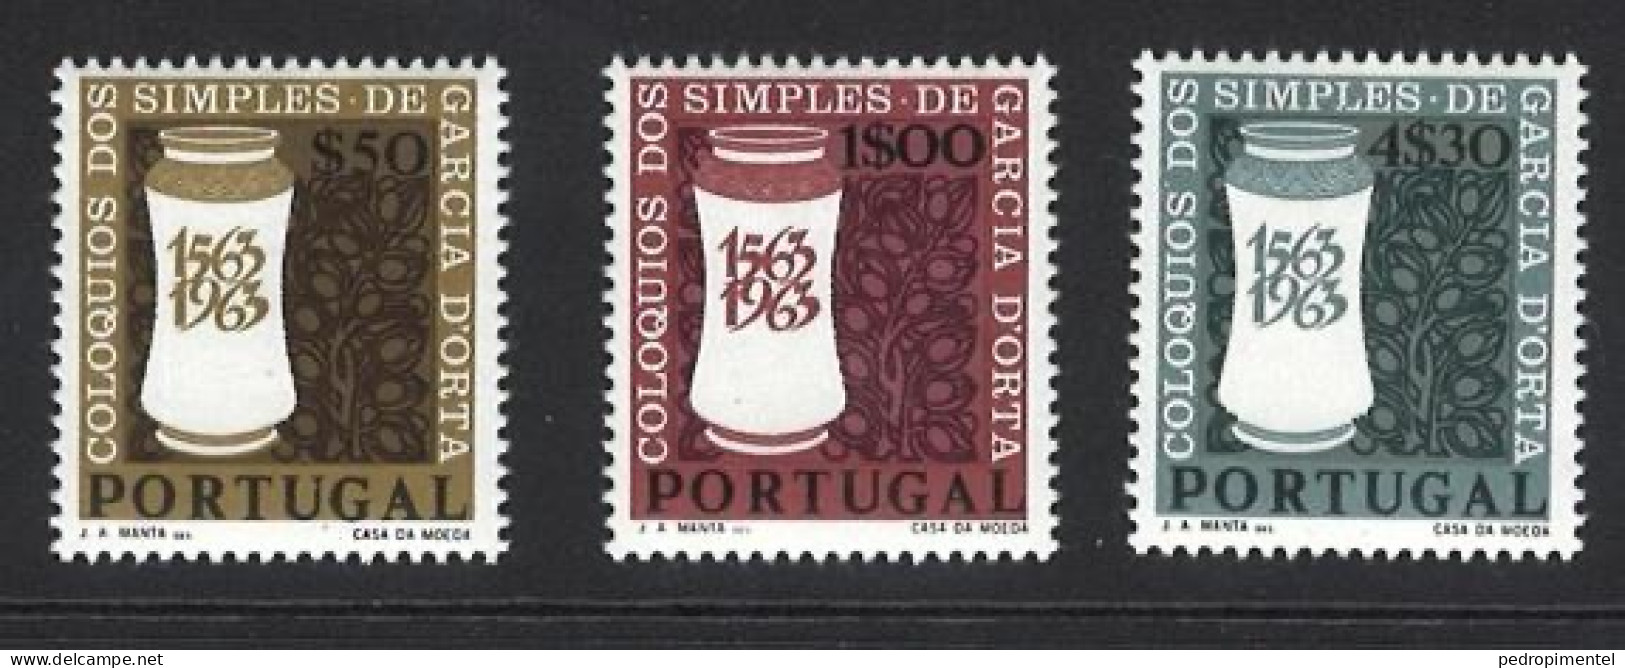 Portugal Stamps 1964 "Garcia Da Horta" Condition MNH OG #925-927 - Unused Stamps